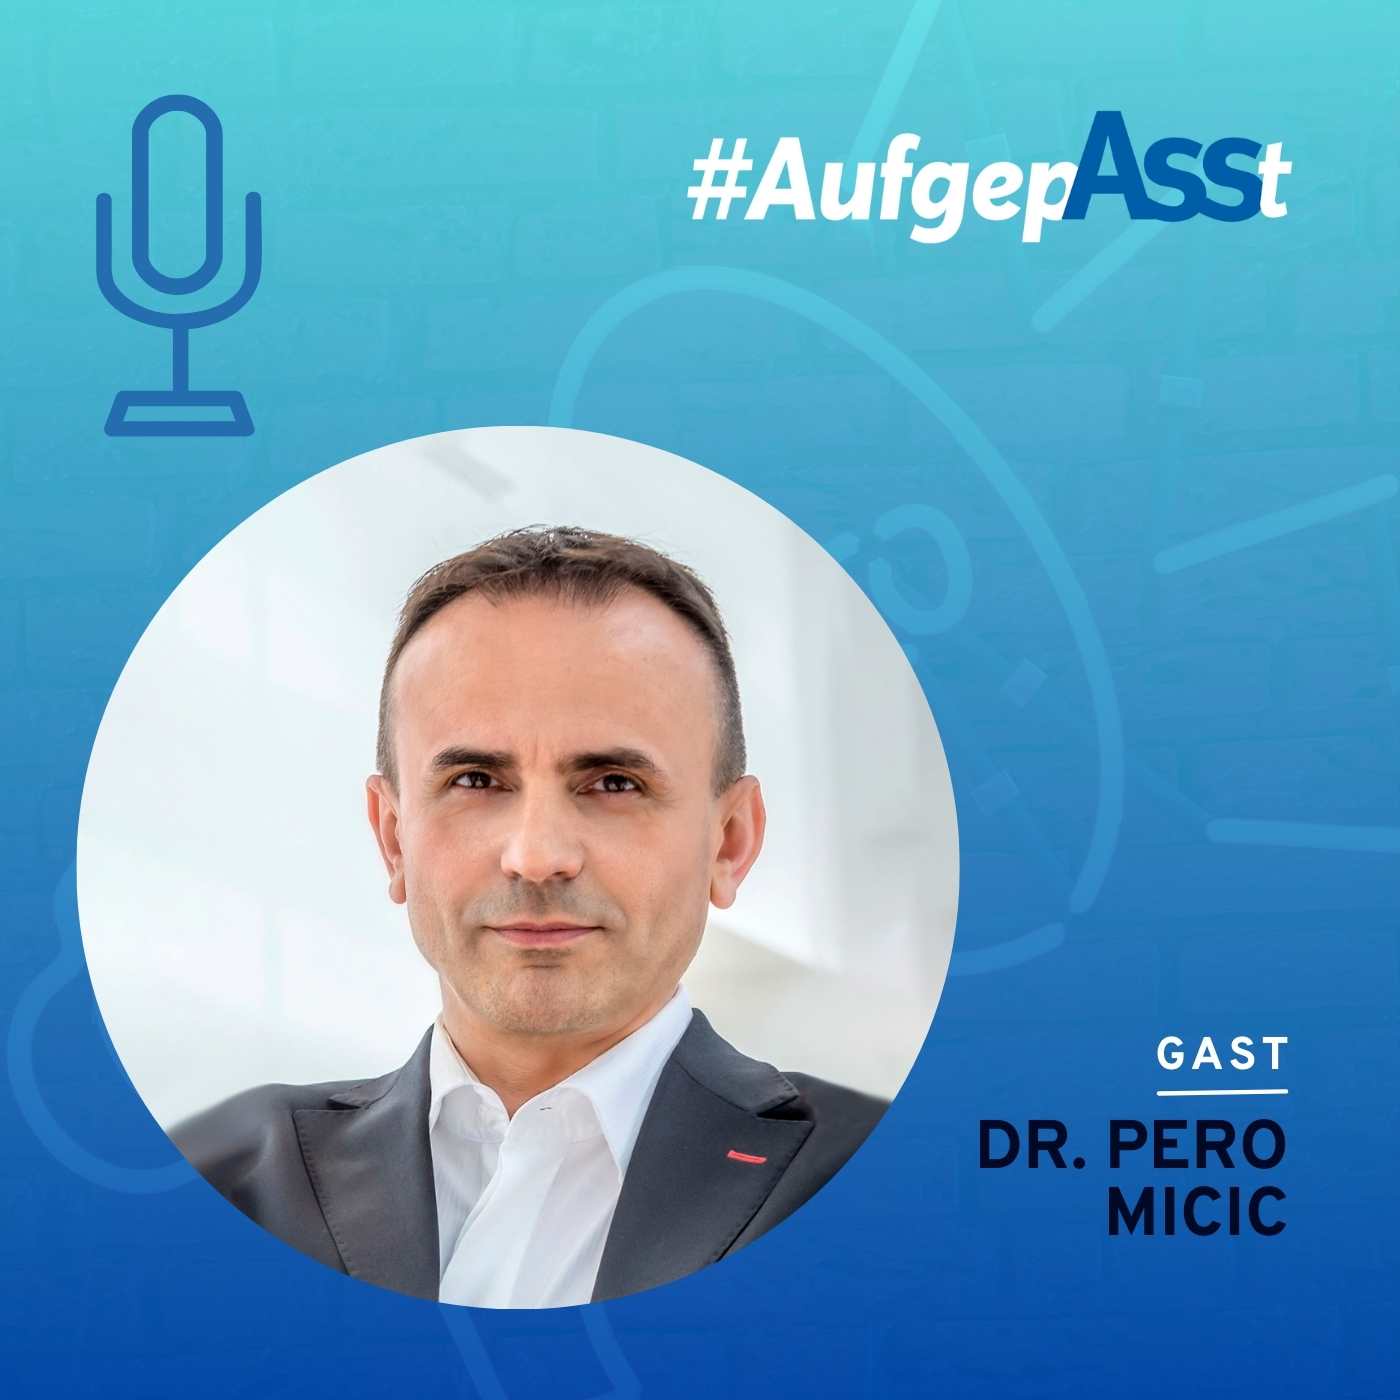 AufgepASSt - AssCompact im Gespräch mit Dr. Pero Micic